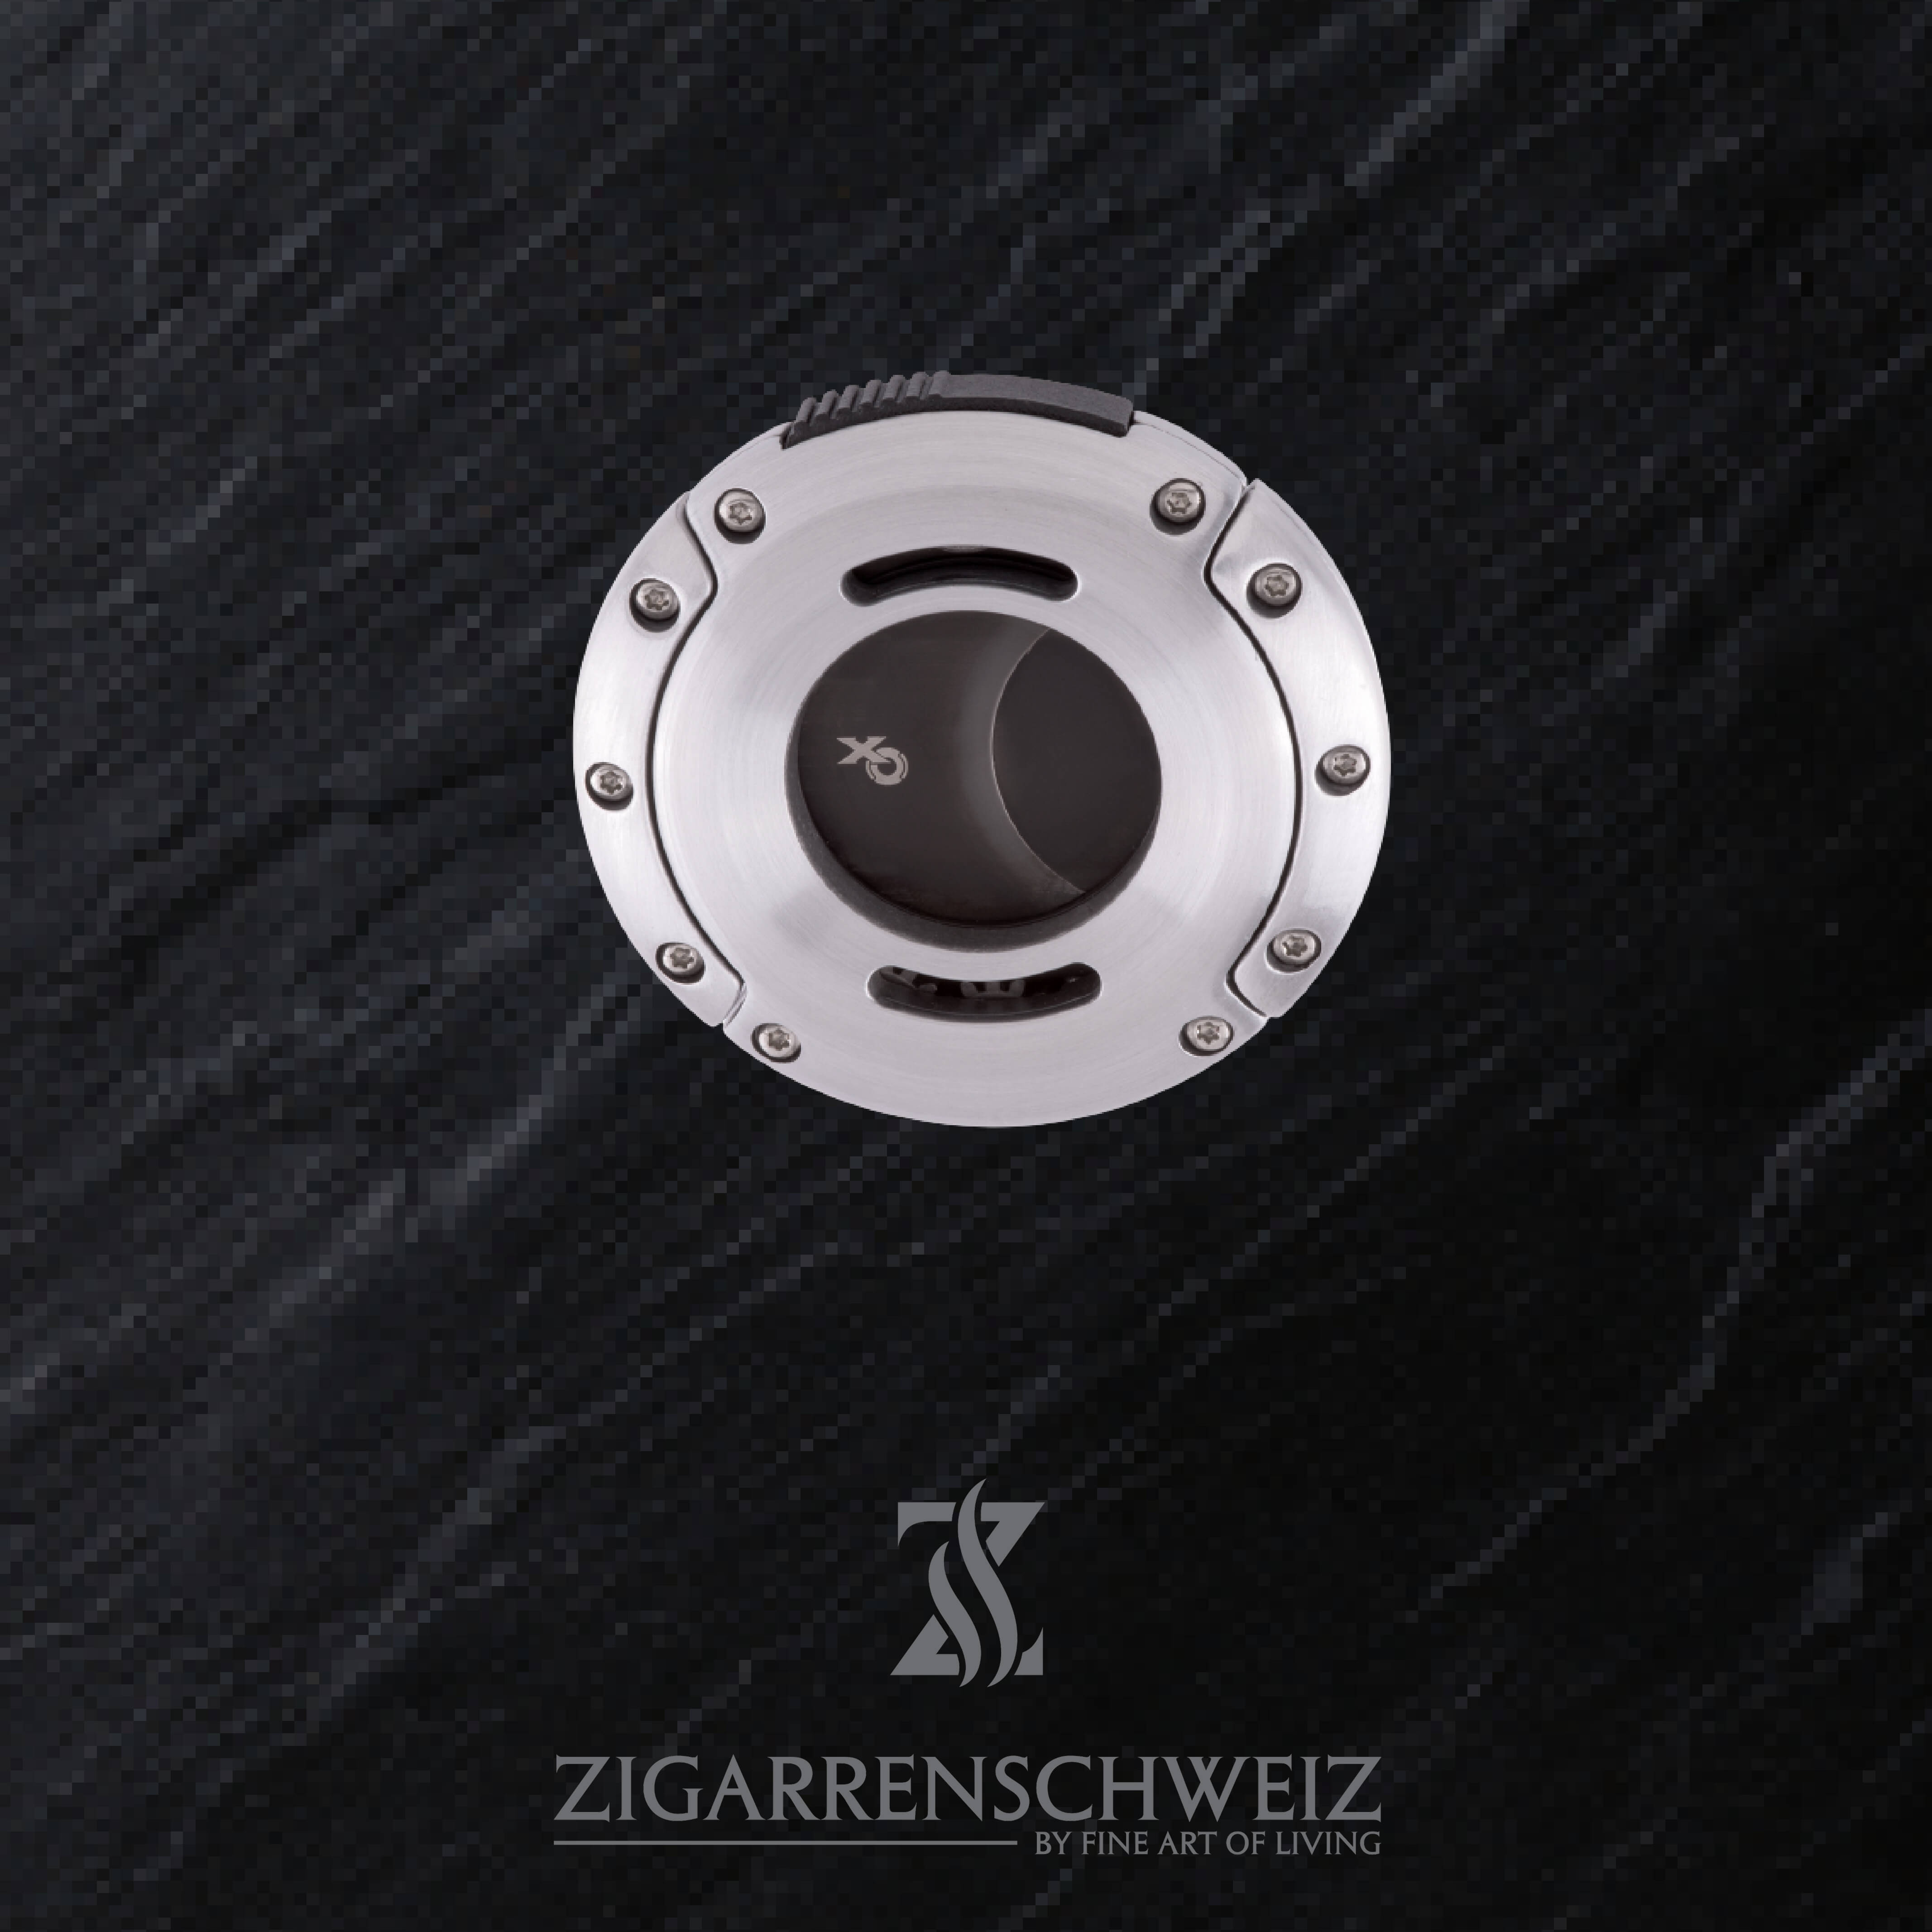 Xikar XO Zigarren Cutter, Farbe Gehäuse: Silber gebürstet, Farbe Klingen: Schwarz, geschlossen